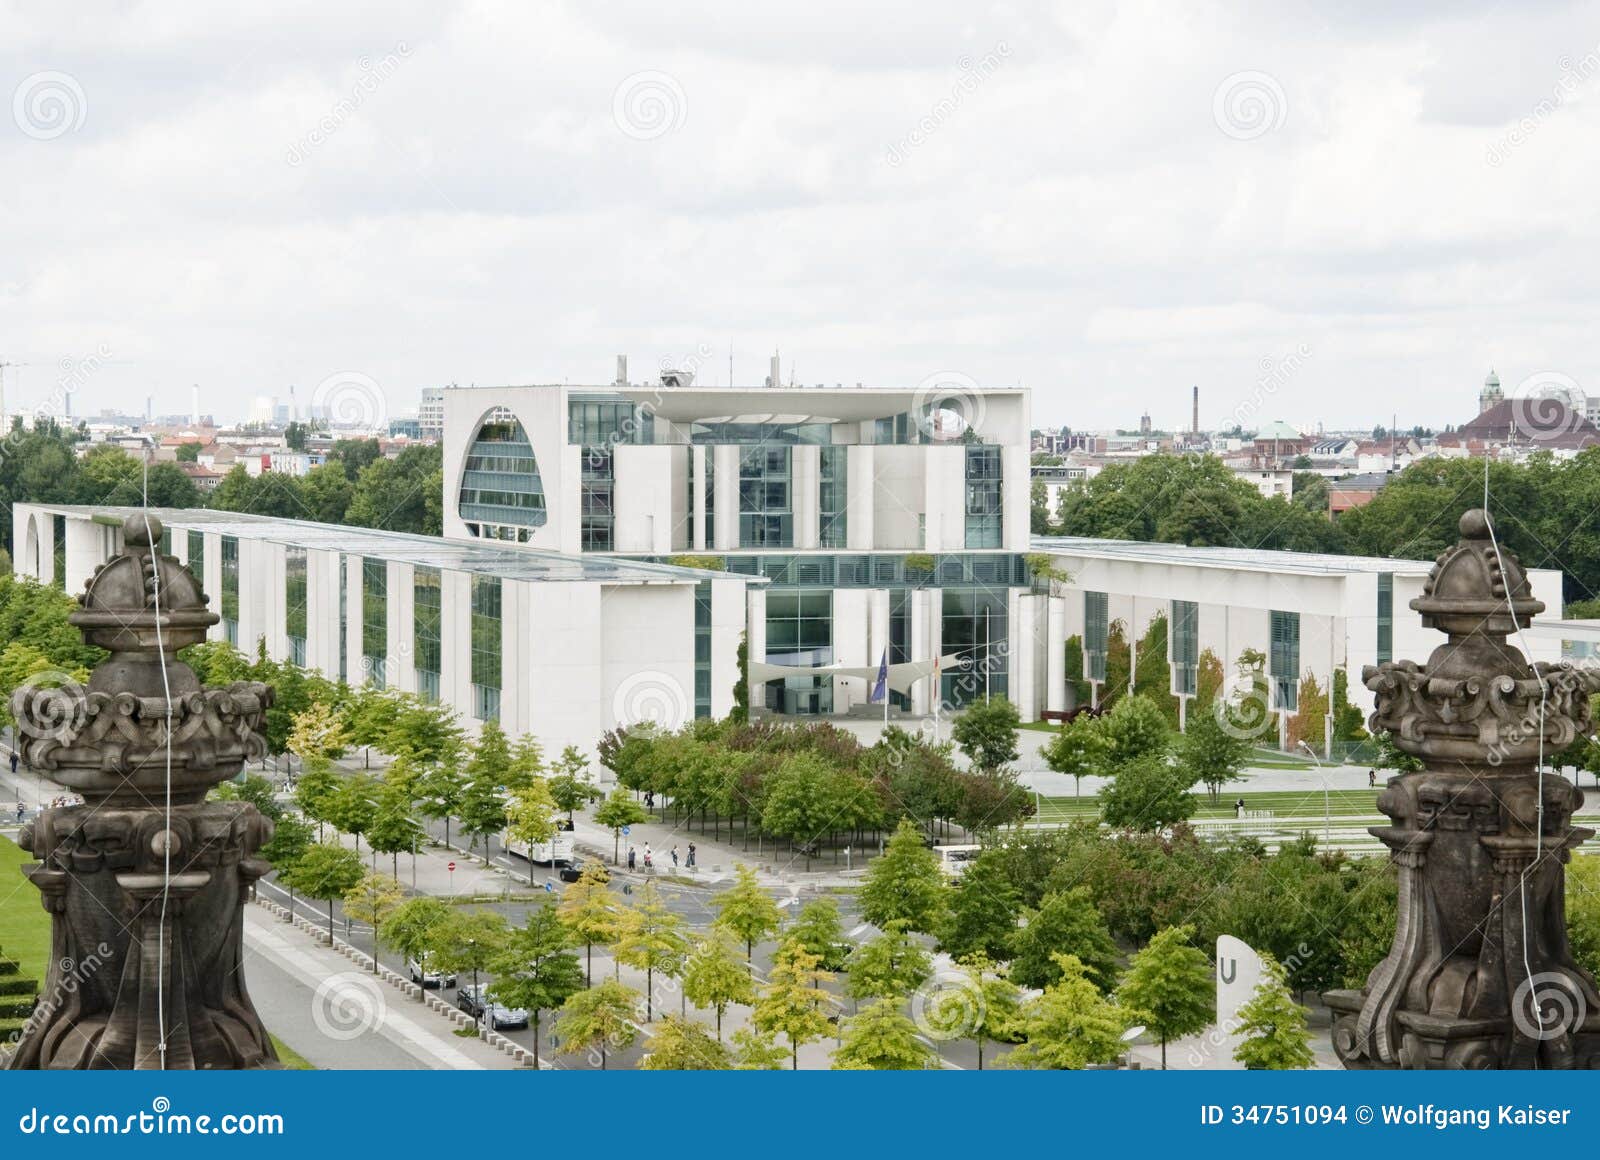 chancellery in berlin